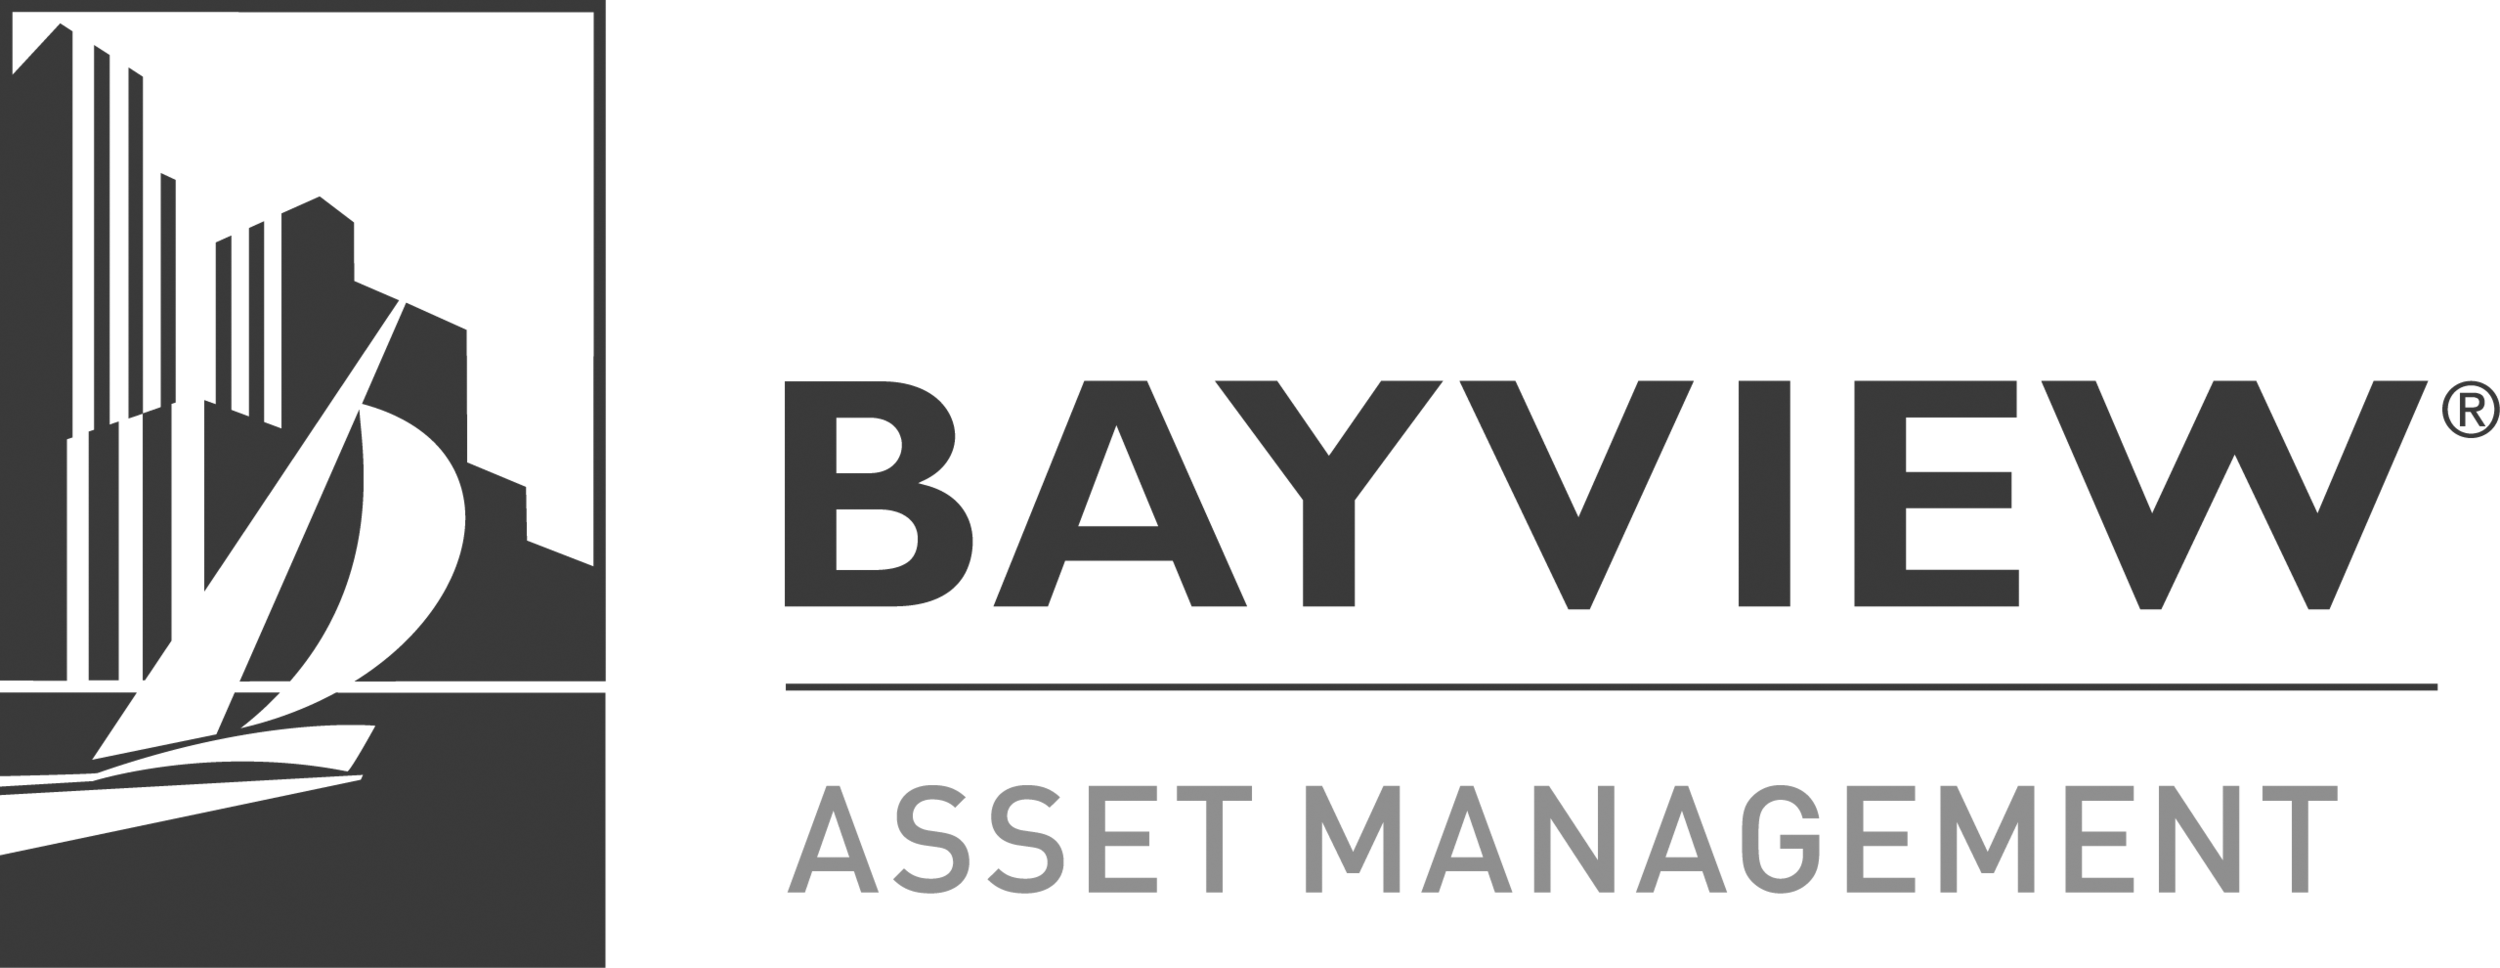 Bayview+Asset+Management_Logo